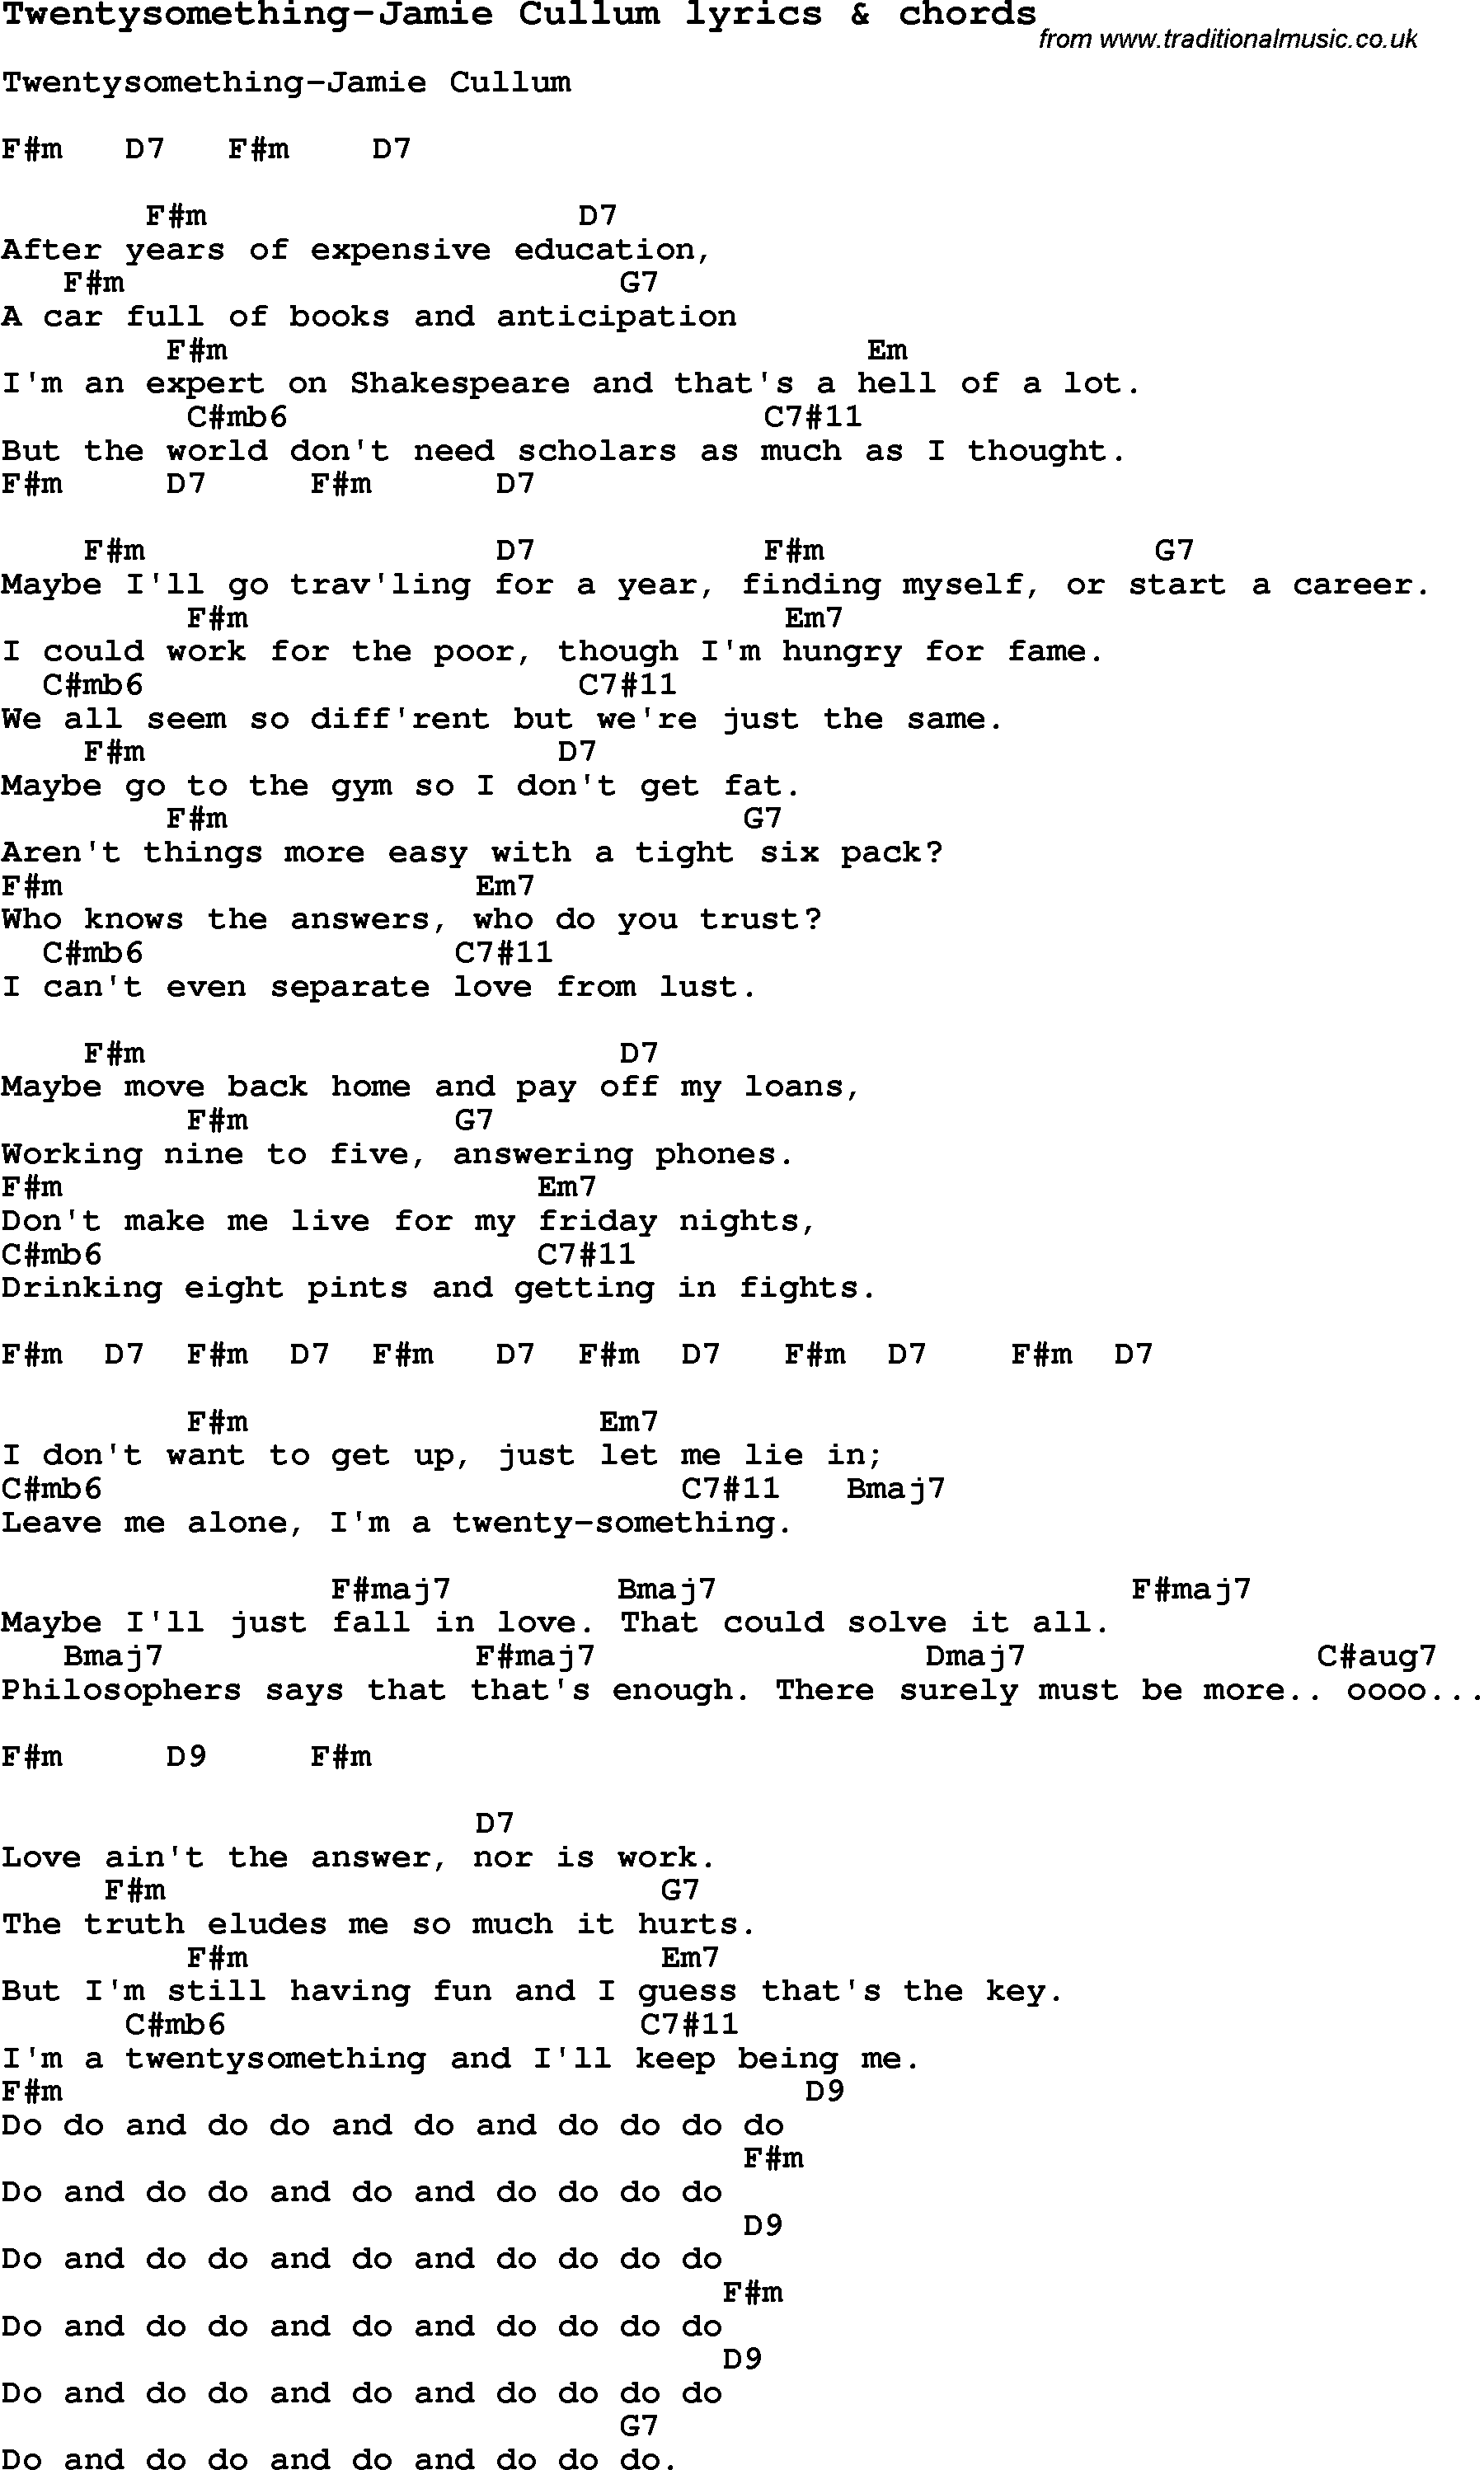 Love Song Lyrics for: Twentysomething-Jamie Cullum with chords for Ukulele, Guitar Banjo etc.